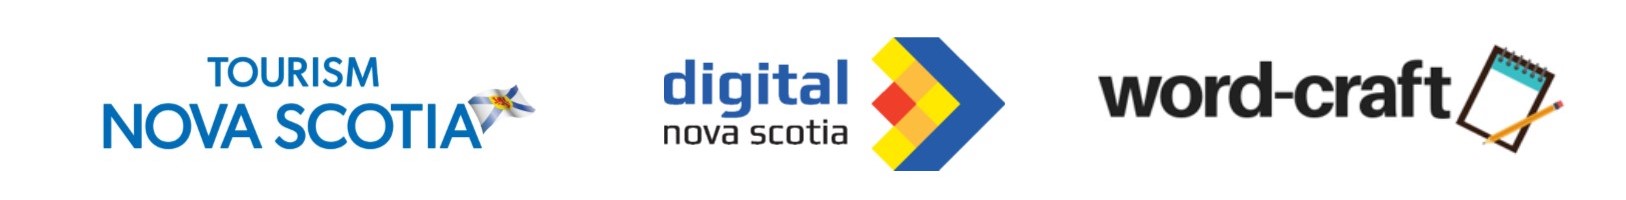 Tourism Nova Scotia, Digtial Nova Scotia and word-craft logos